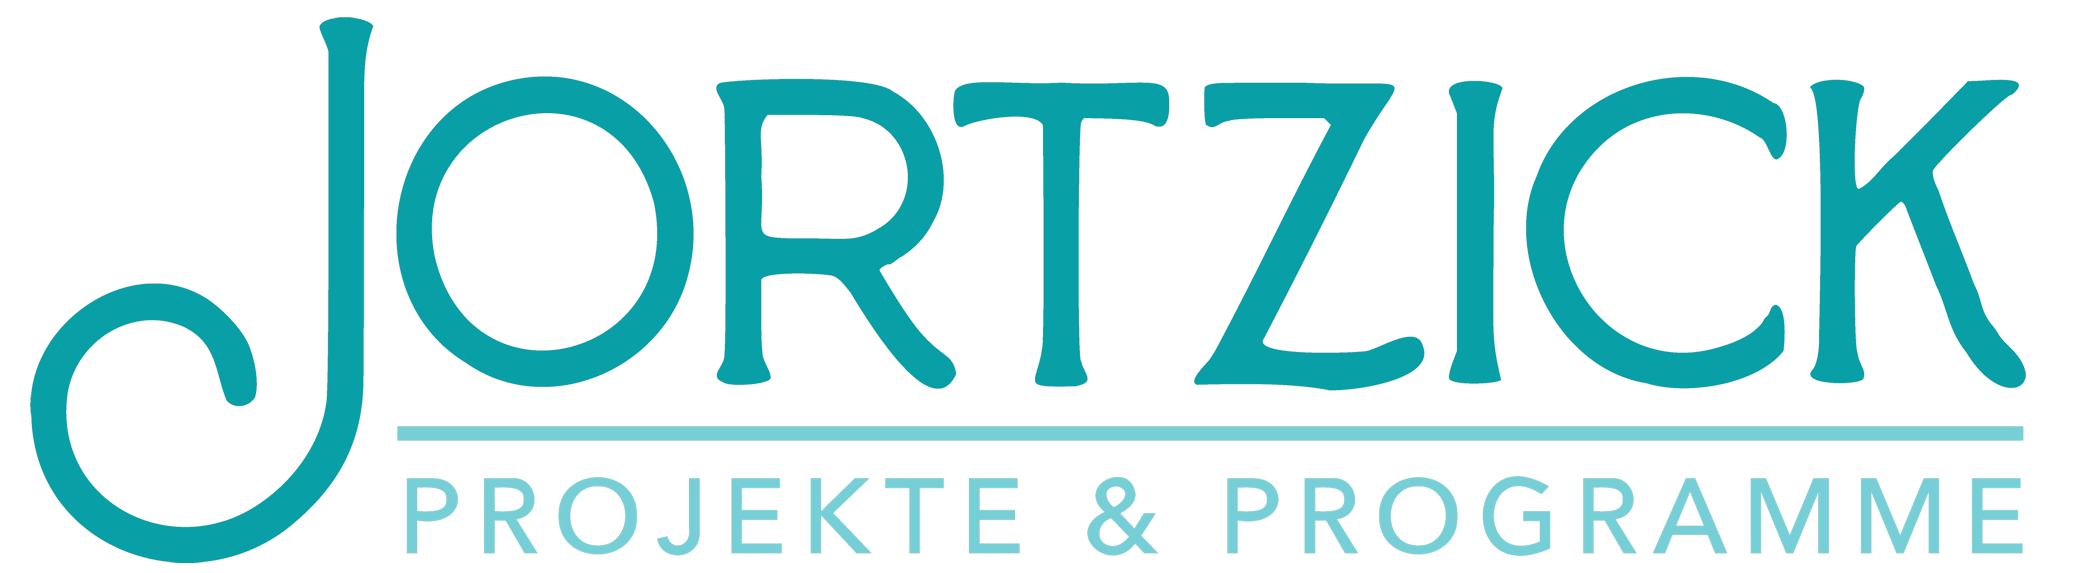 Jortzick Projekte & Programme